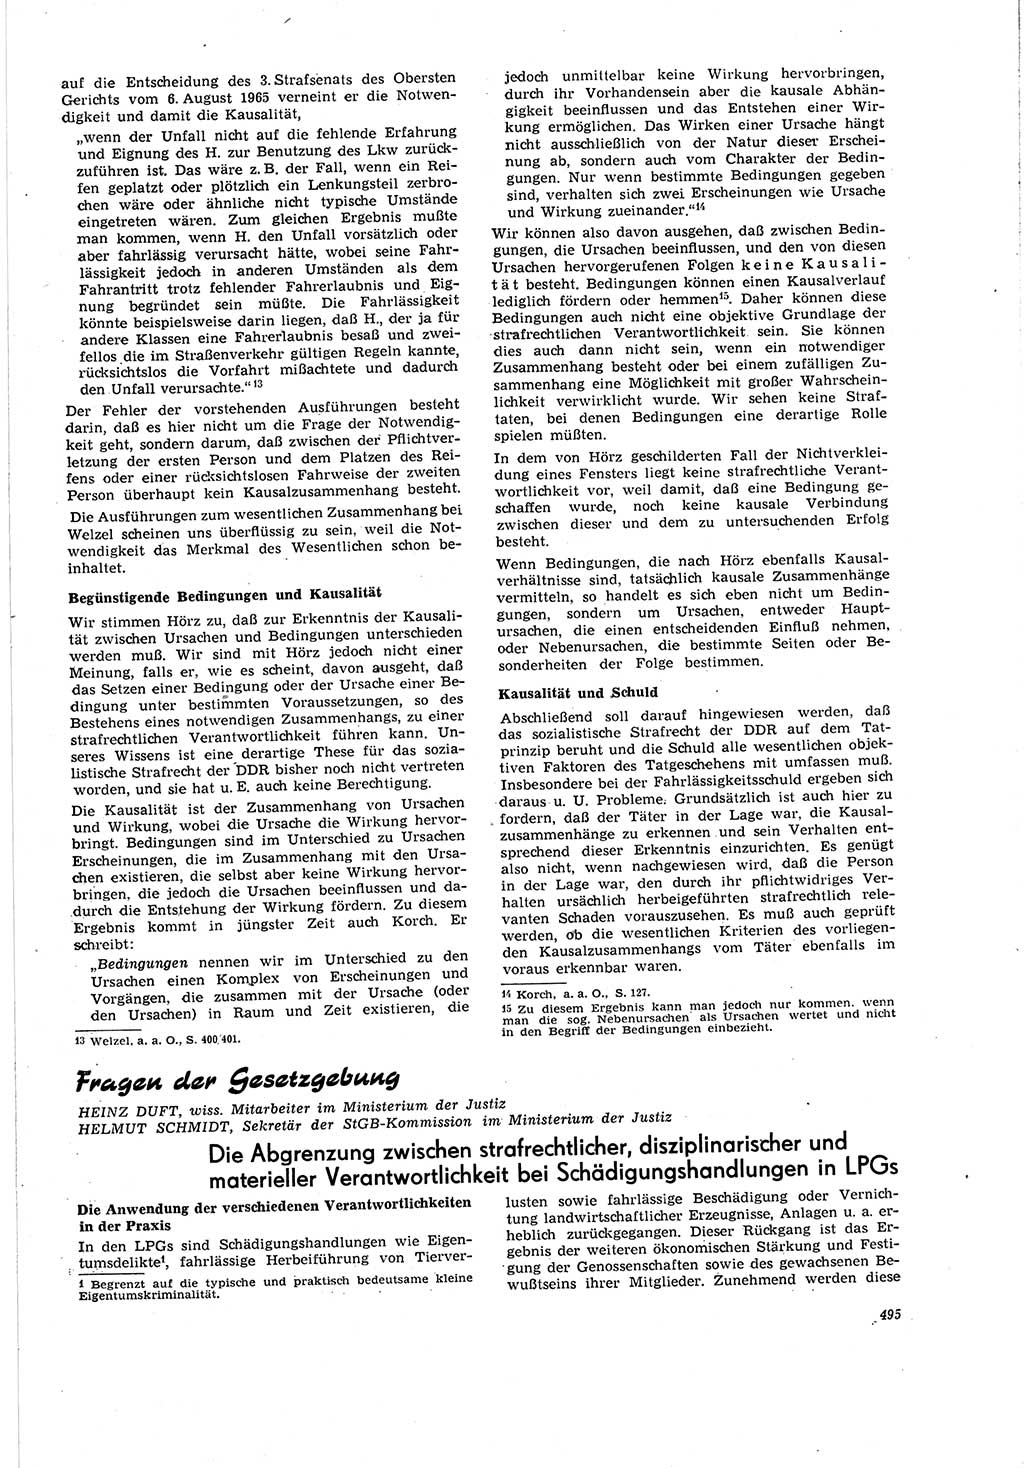 Neue Justiz (NJ), Zeitschrift für Recht und Rechtswissenschaft [Deutsche Demokratische Republik (DDR)], 20. Jahrgang 1966, Seite 495 (NJ DDR 1966, S. 495)